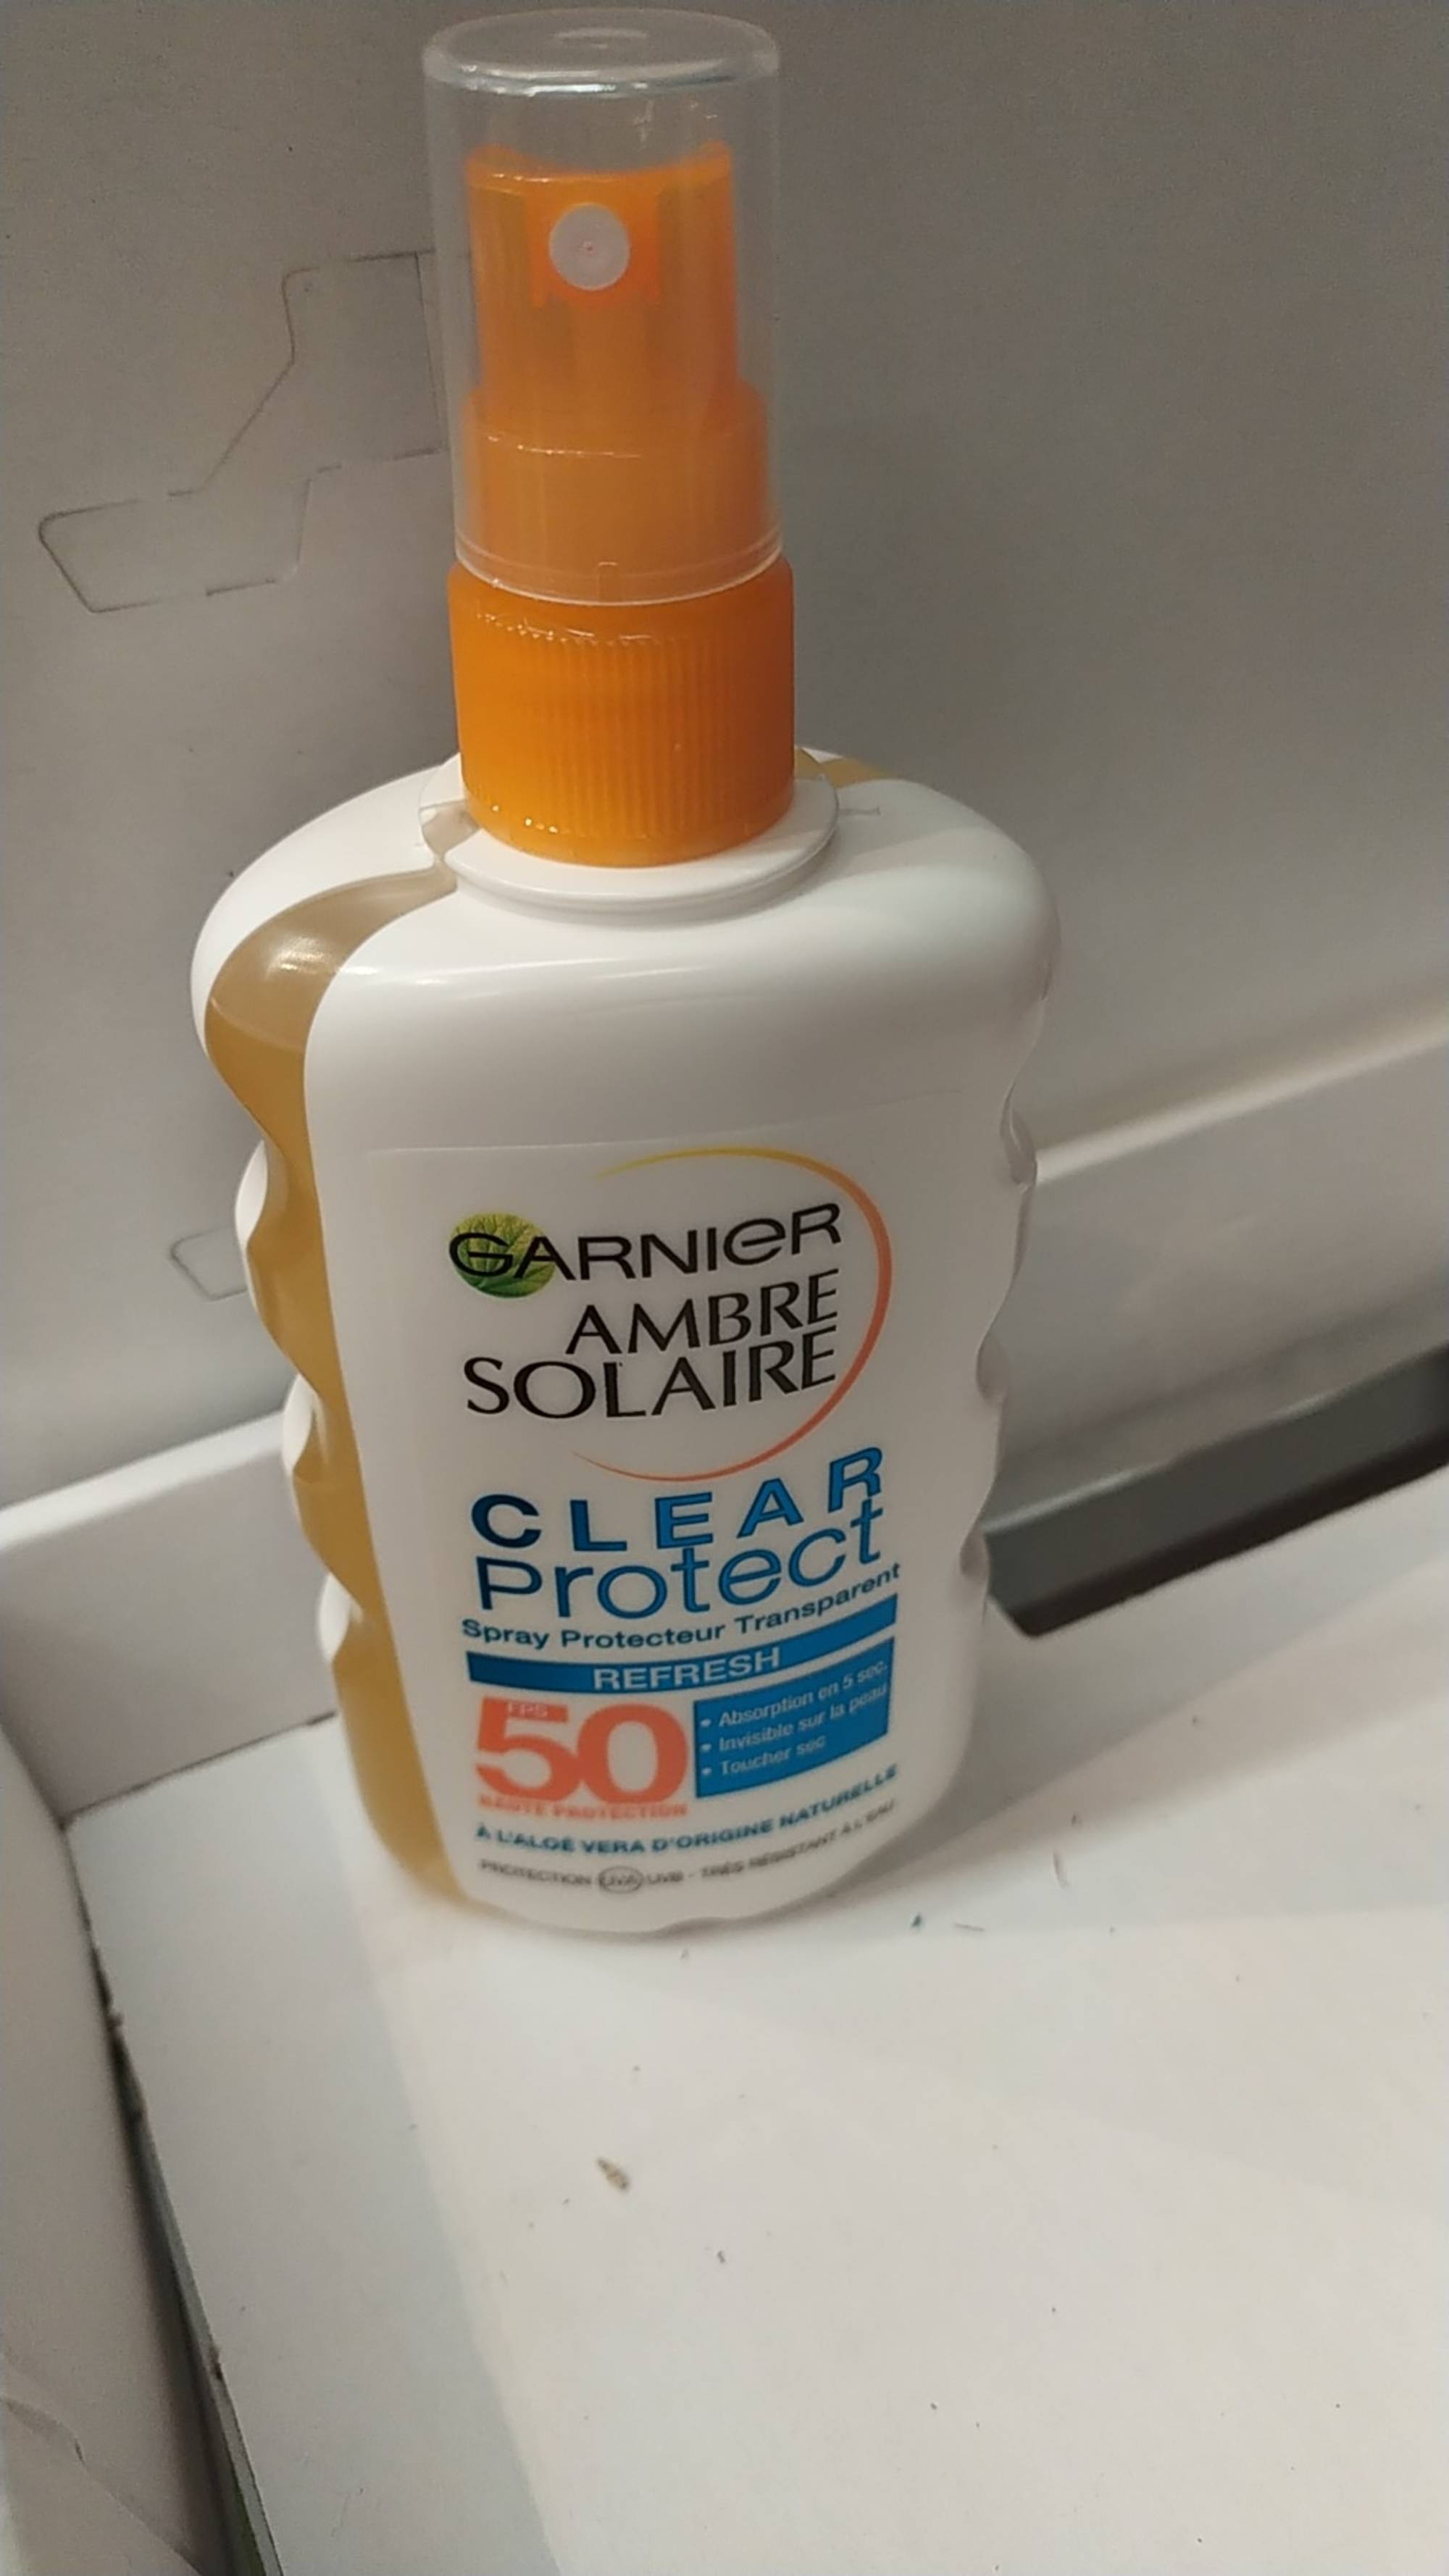 GARNIER - Ambre solaire clear protect - Spray protecteur transparent fps50